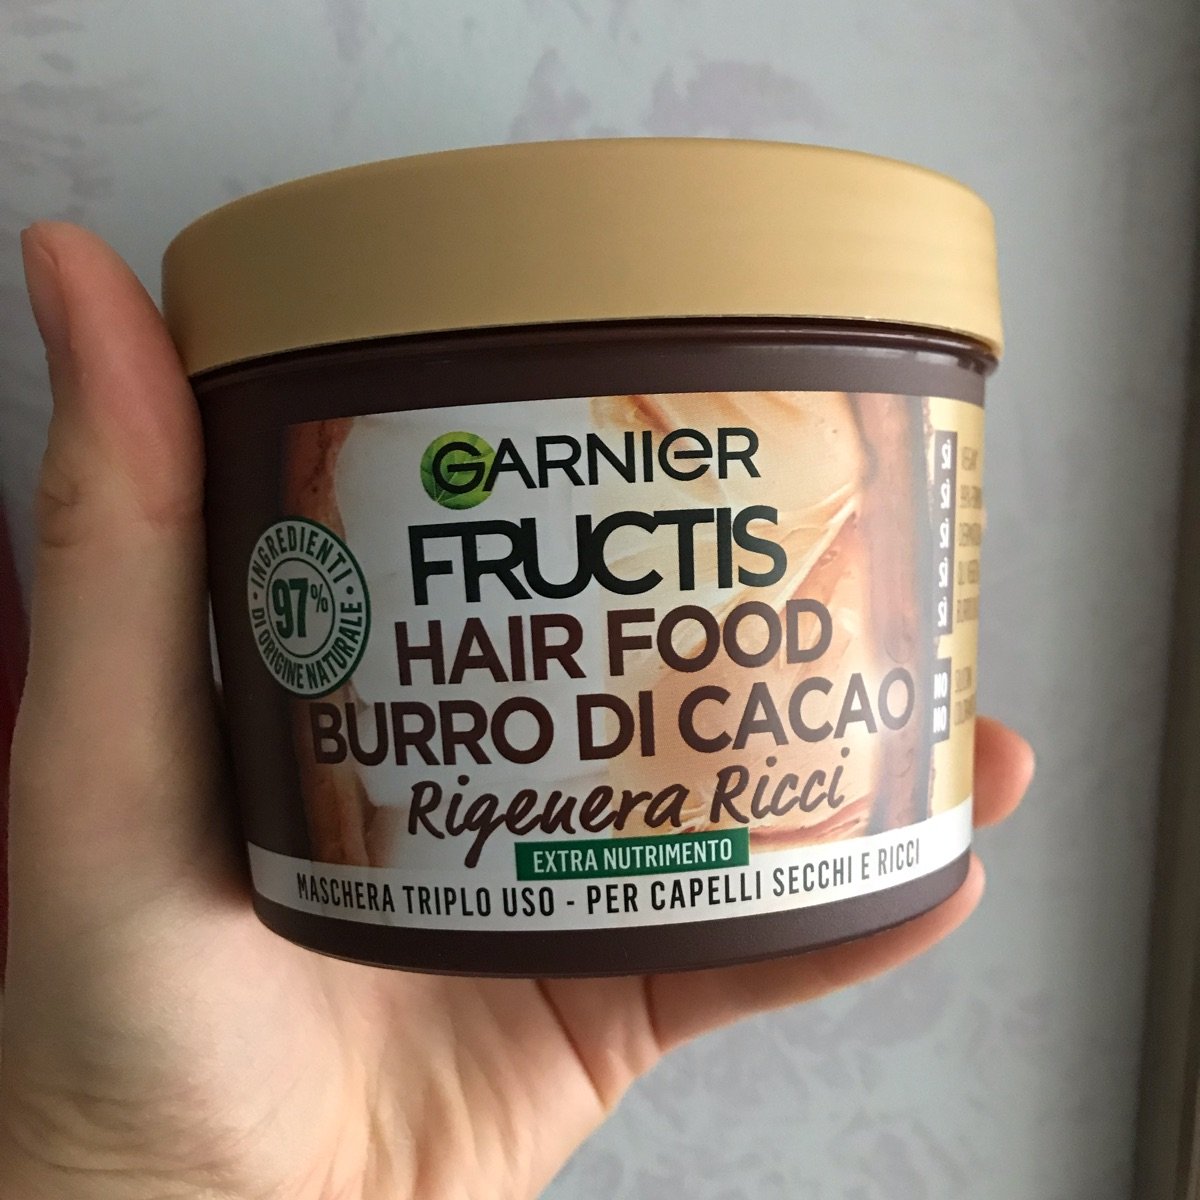 Garnier 3 in 1 hair food burro di cacao Reviews | abillion